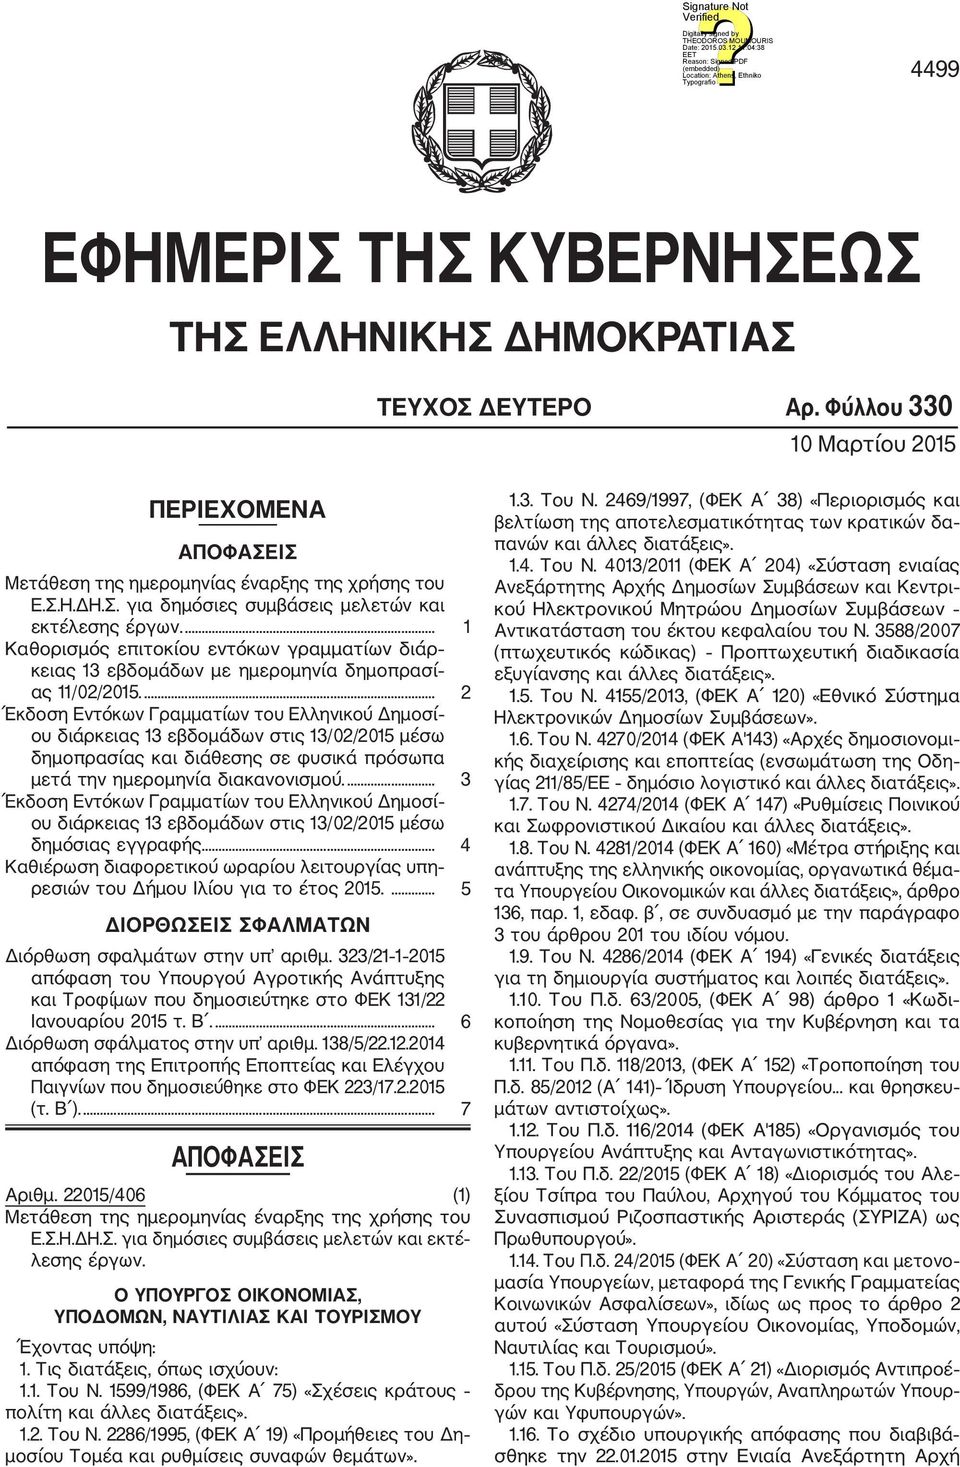 ... 2 Έκδοση Εντόκων Γραμματίων του Ελληνικού Δημοσί ου διάρκειας 13 εβδομάδων στις 13/02/2015 μέσω δημοπρασίας και διάθεσης σε φυσικά πρόσωπα μετά την ημερομηνία διακανονισμού.